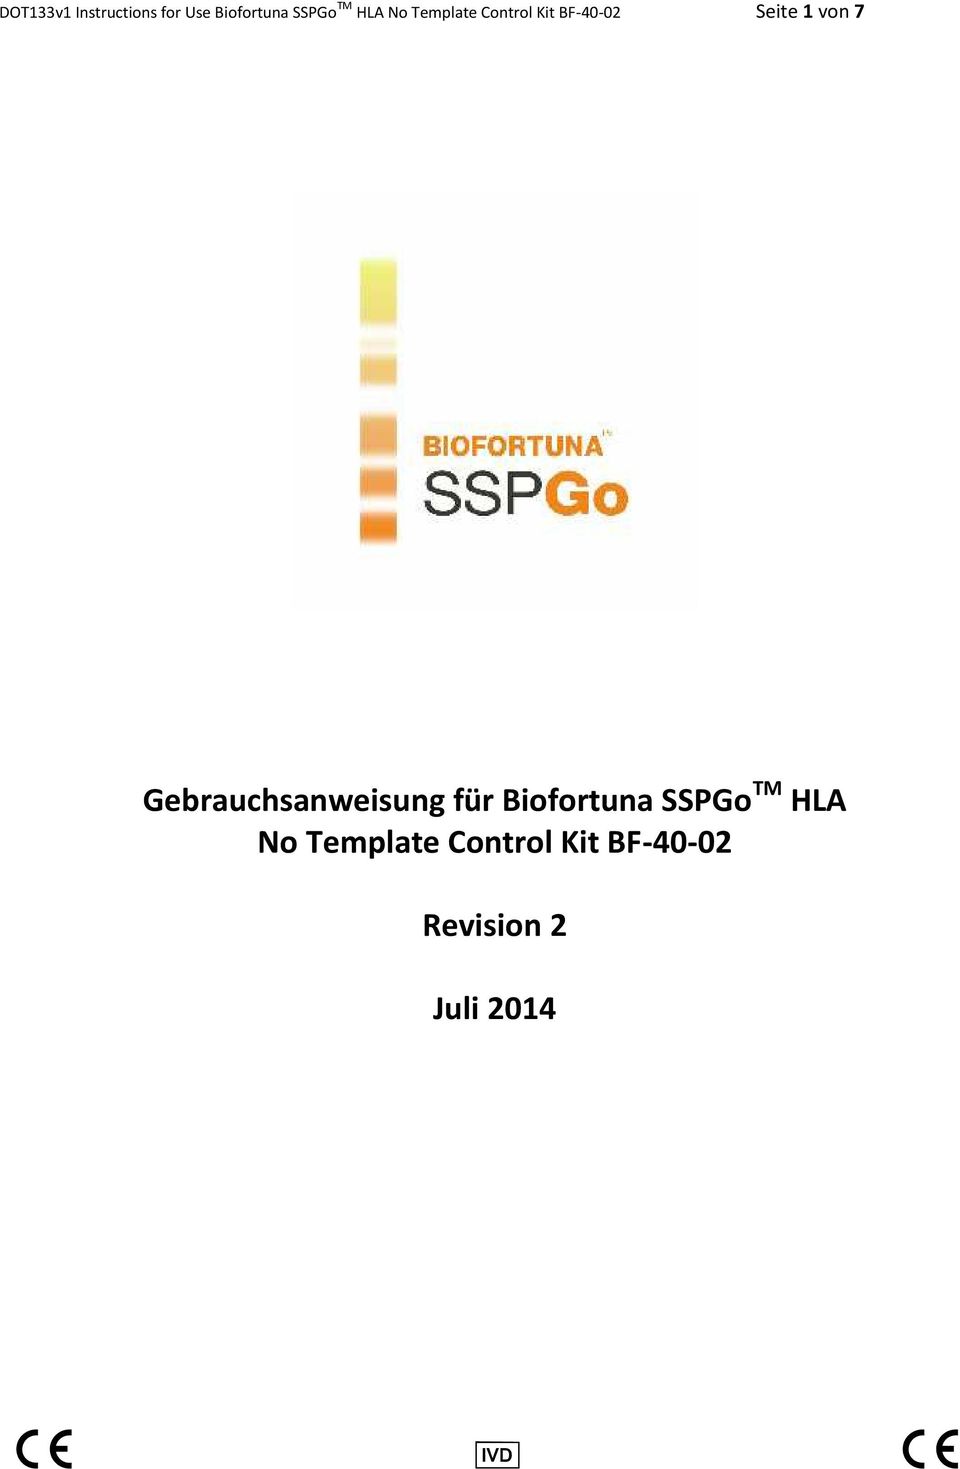 Gebrauchsanweisung für Biofortuna SSPGo TM HLA No